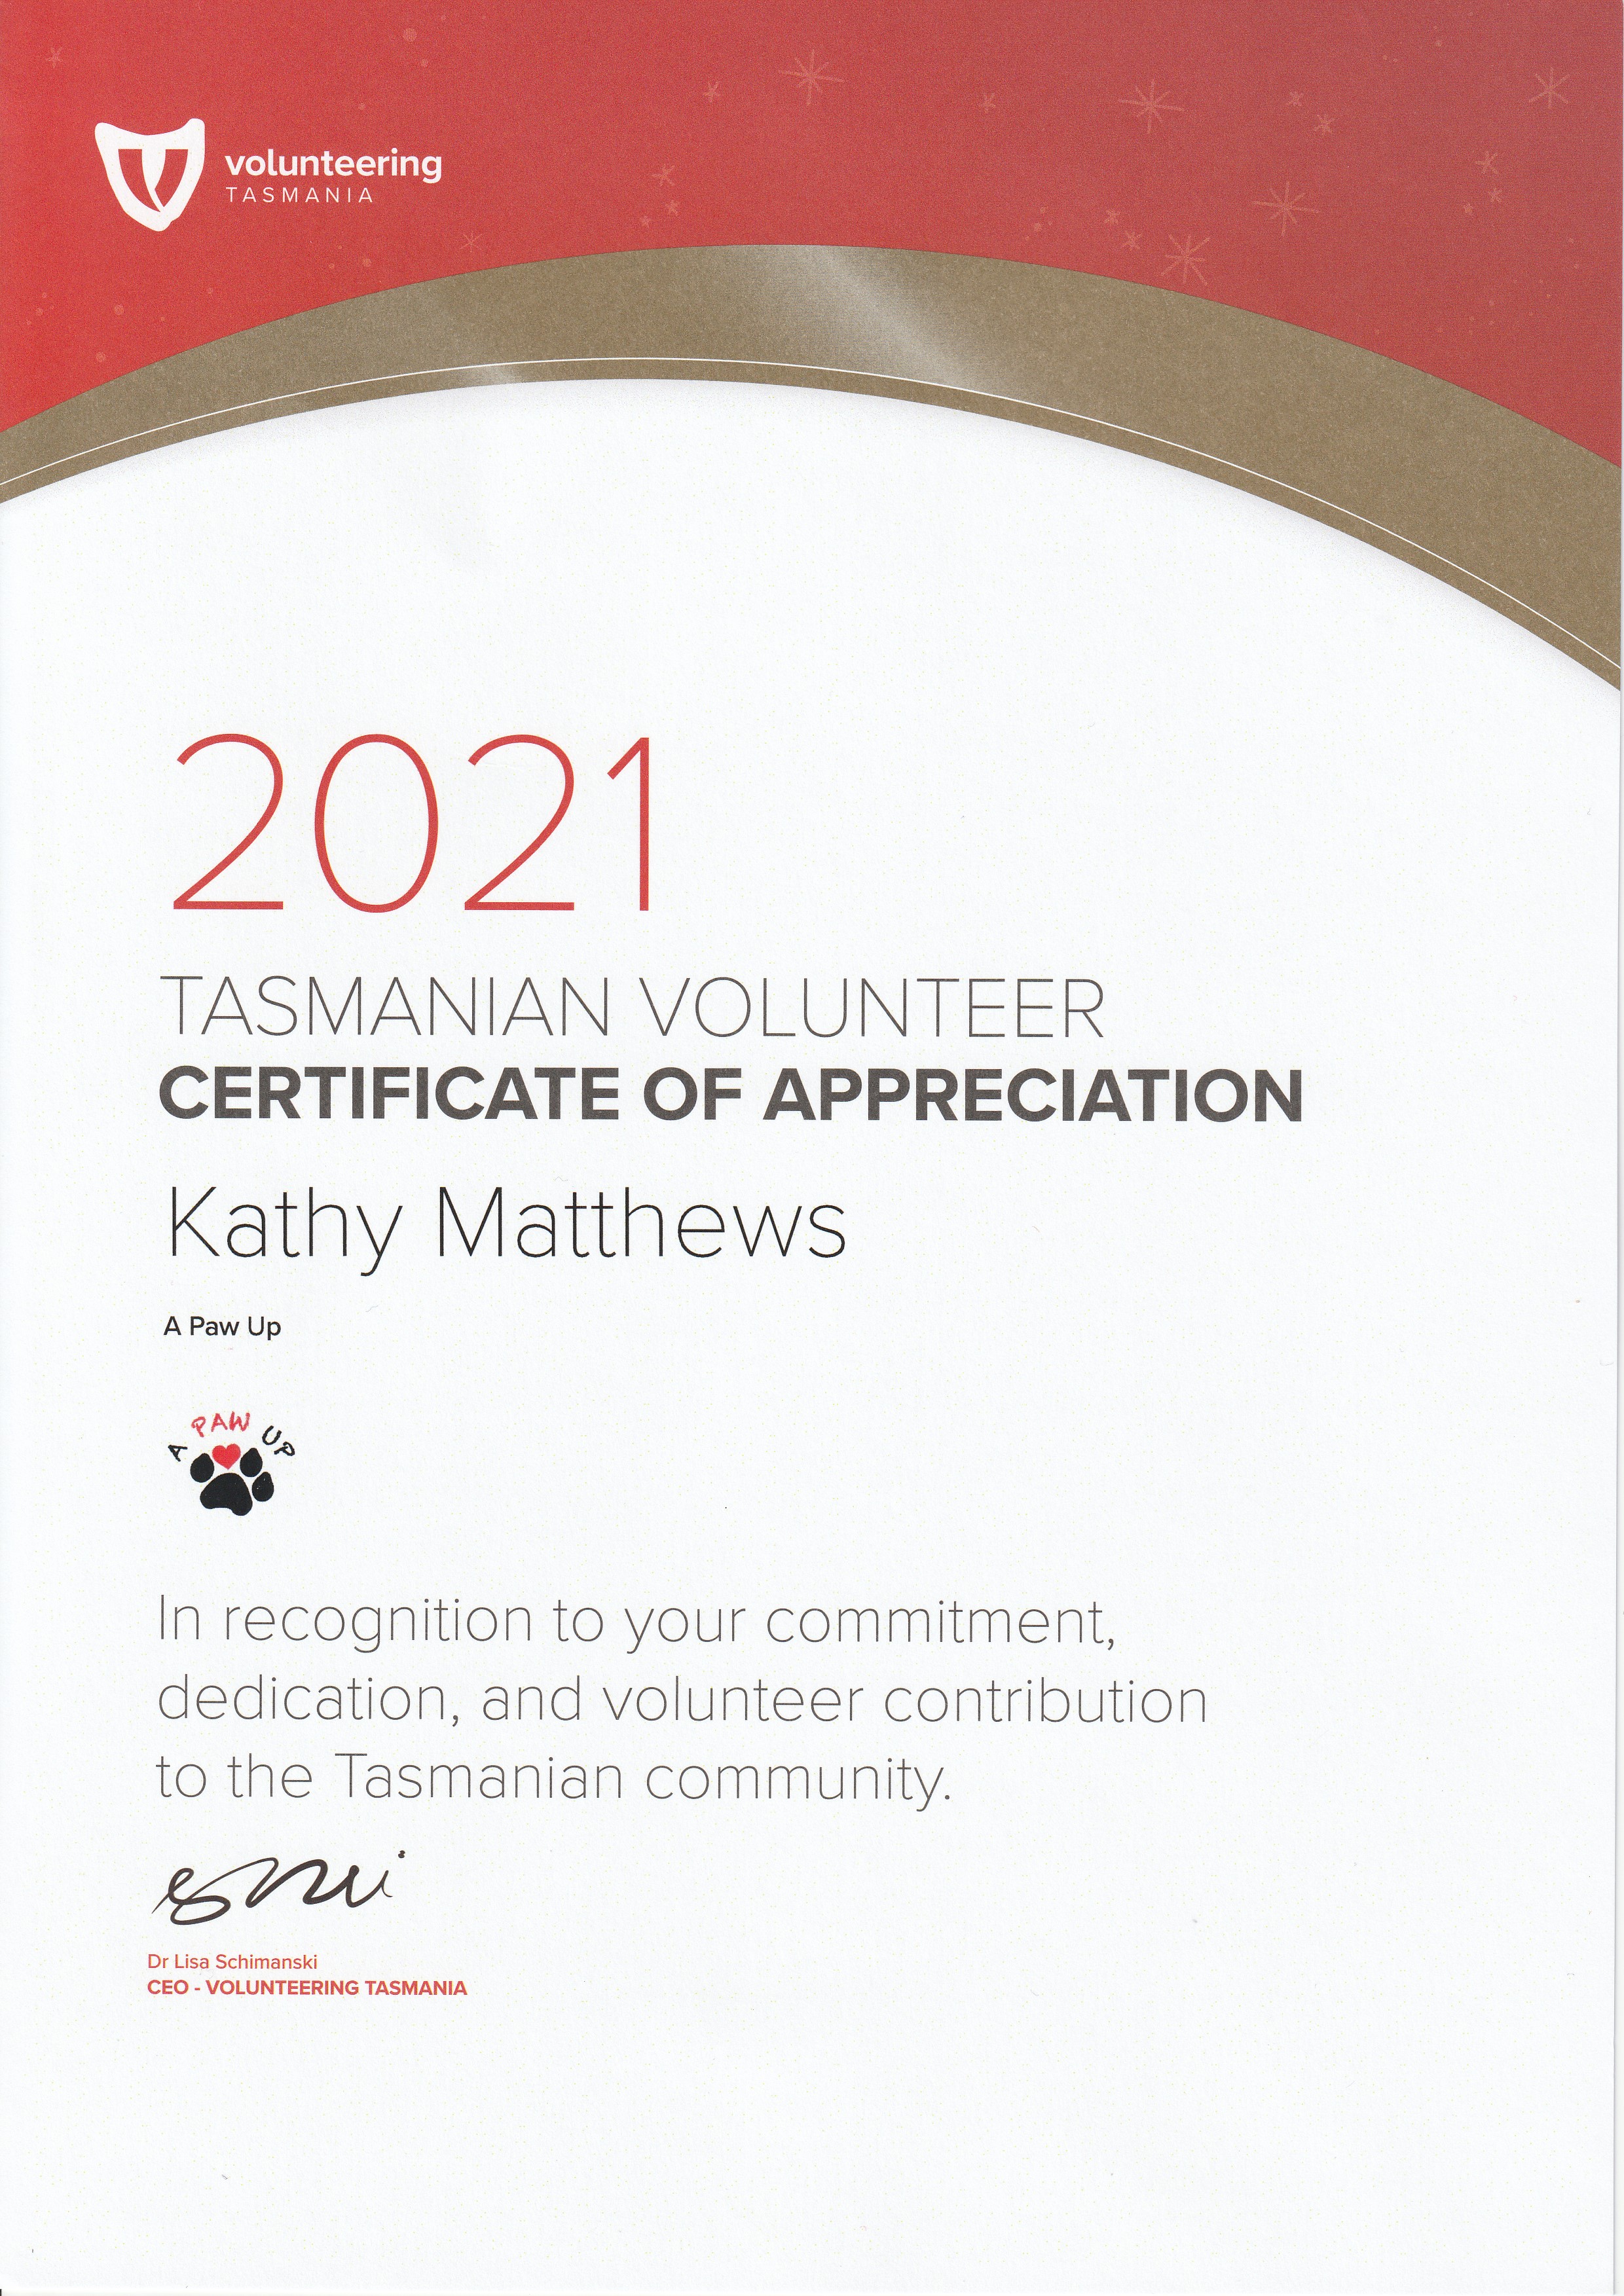 Volunteering Tasmania Certificate of Appreciation 2021